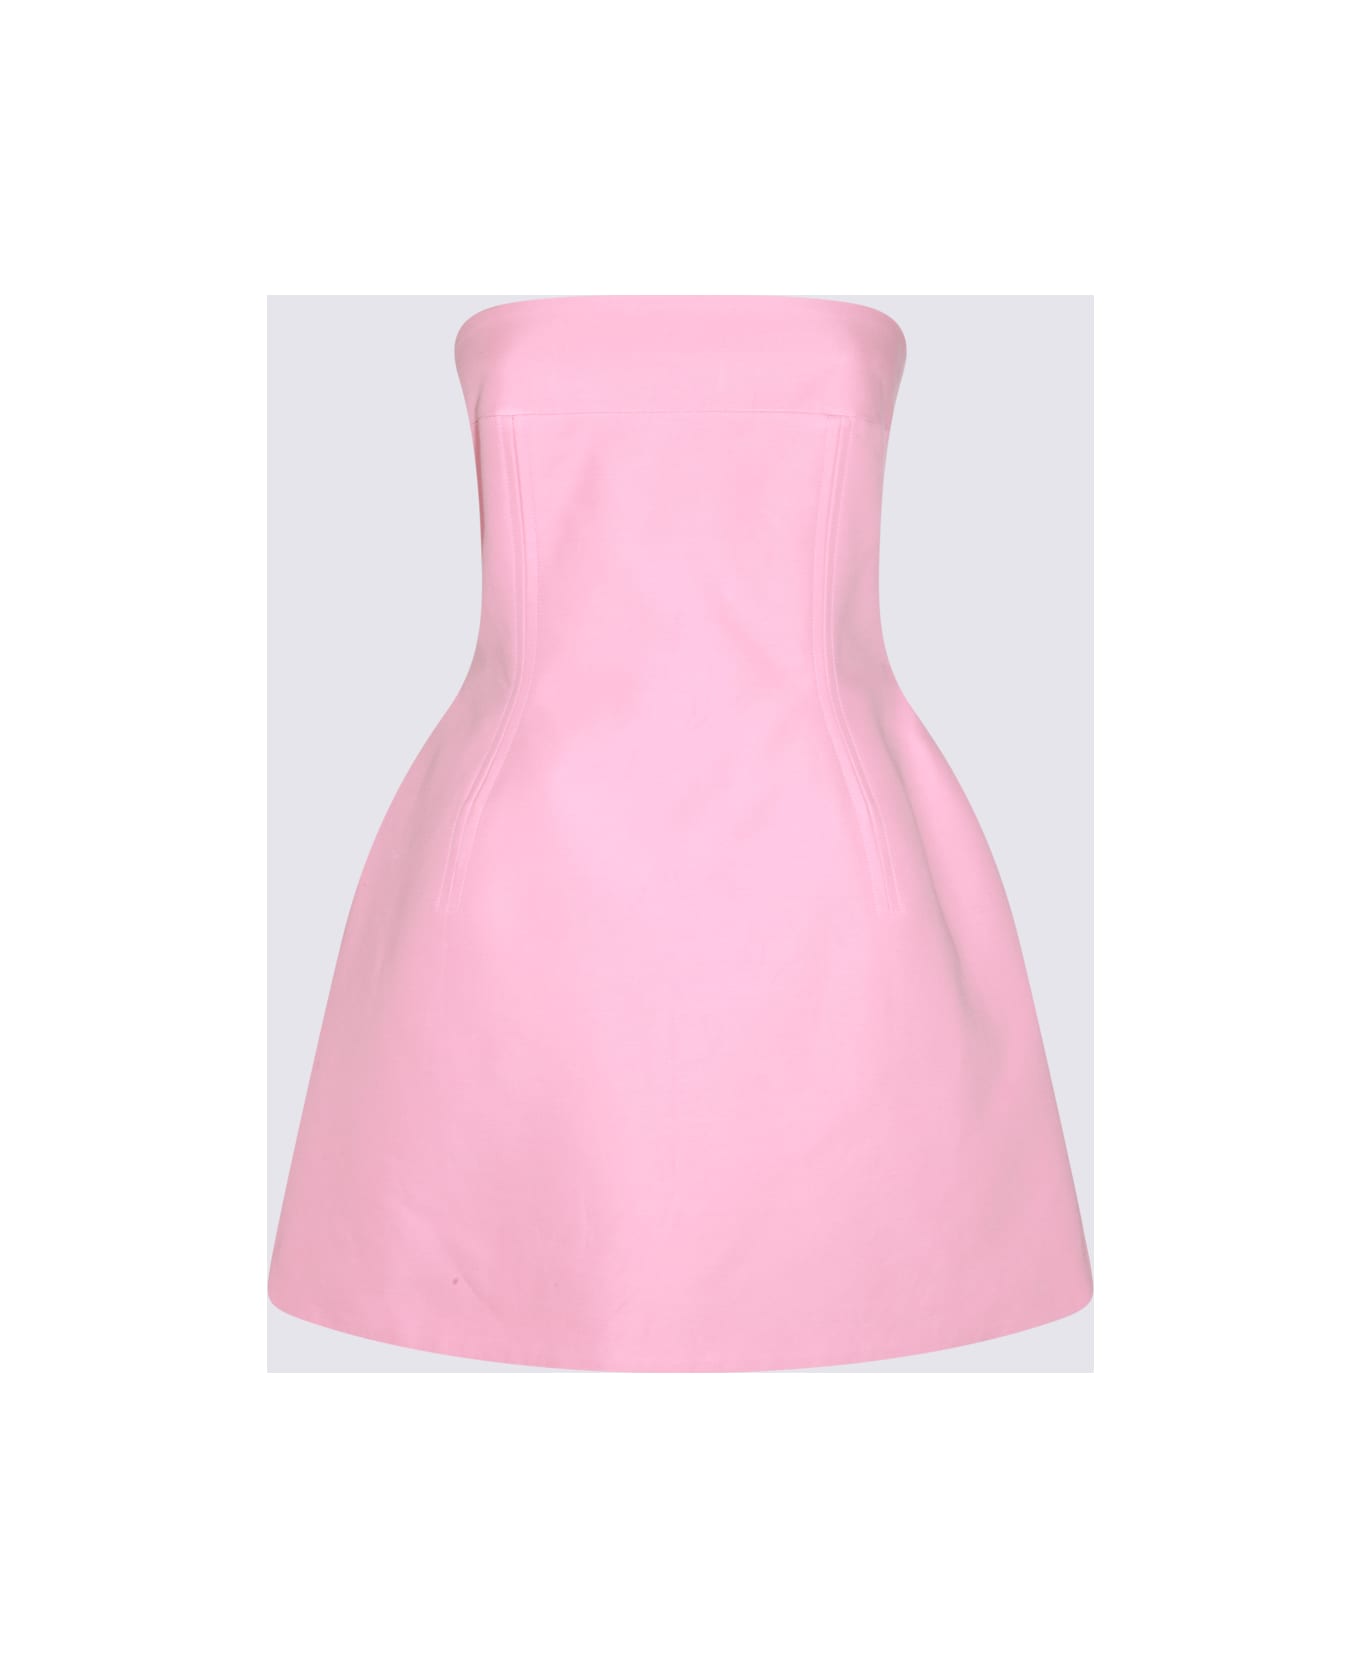 Marni Pink Cotton Mini Dress - Pink